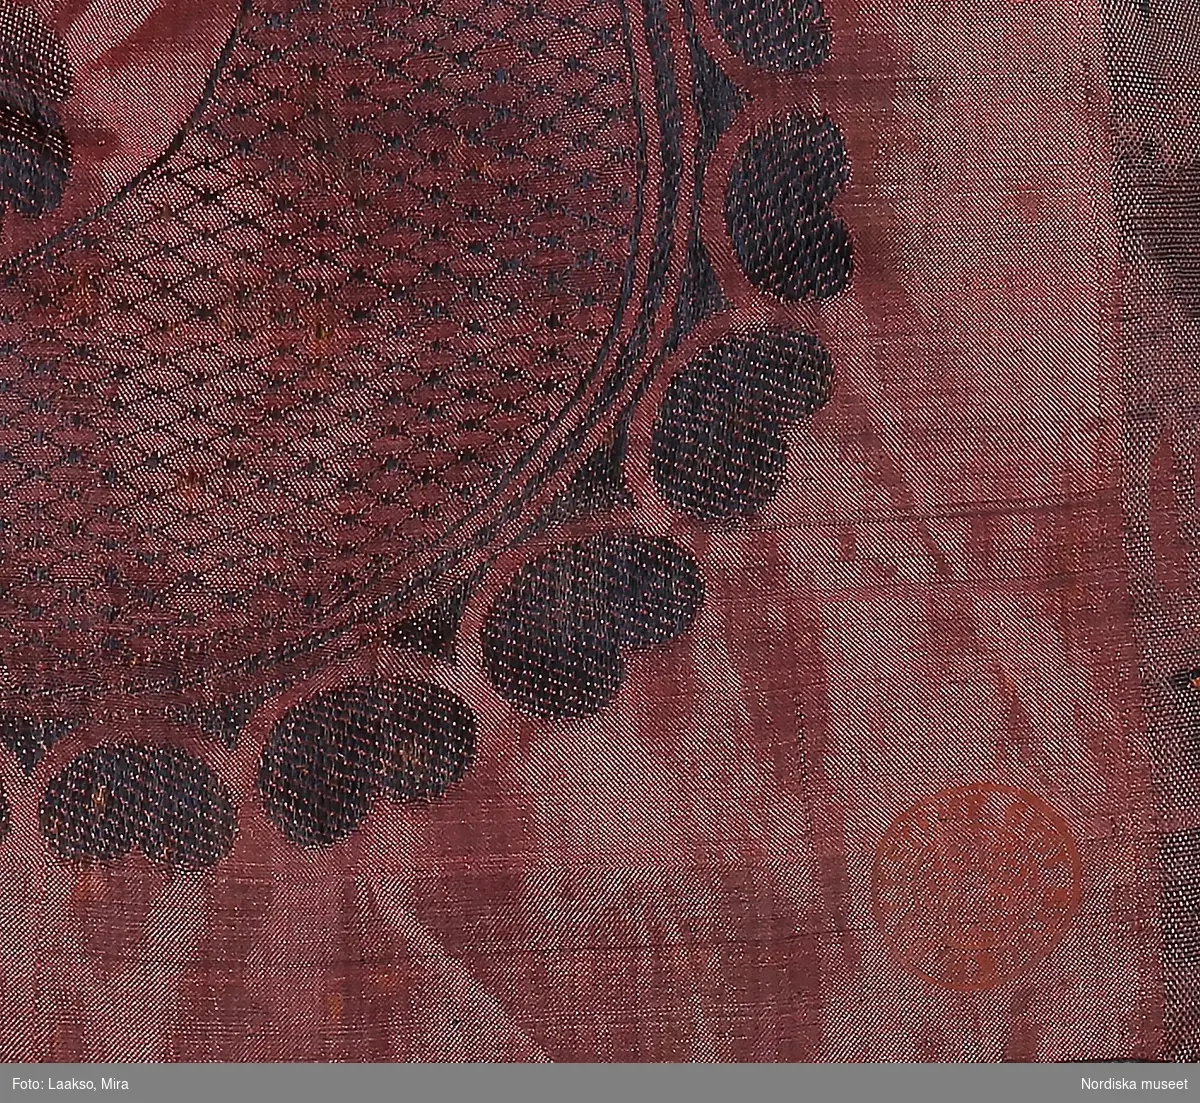 Kvadratiskt halskläde av sidentaft i svart och rödrosa.  Mittspegeln mörk med jacquardvävt mönster: rutindelning med ornamenterade bårder, i varje ruta en  svängd blomkvist. Bred kantbård med  stora vågböjda gallerband med mellanliggande blommor. Handsydda fållar, tvåknuten krusad frans runtom av tvinnat silke i rosa och svart. I ena hörnet en röd rund stämpel med texten: Stockh. hallstemp. 1849.
Buren som brudschal omkr. 1850.
Anm. I fint skick, en mindre blekt fläck.
/Berit Eldvik 2011-12-07